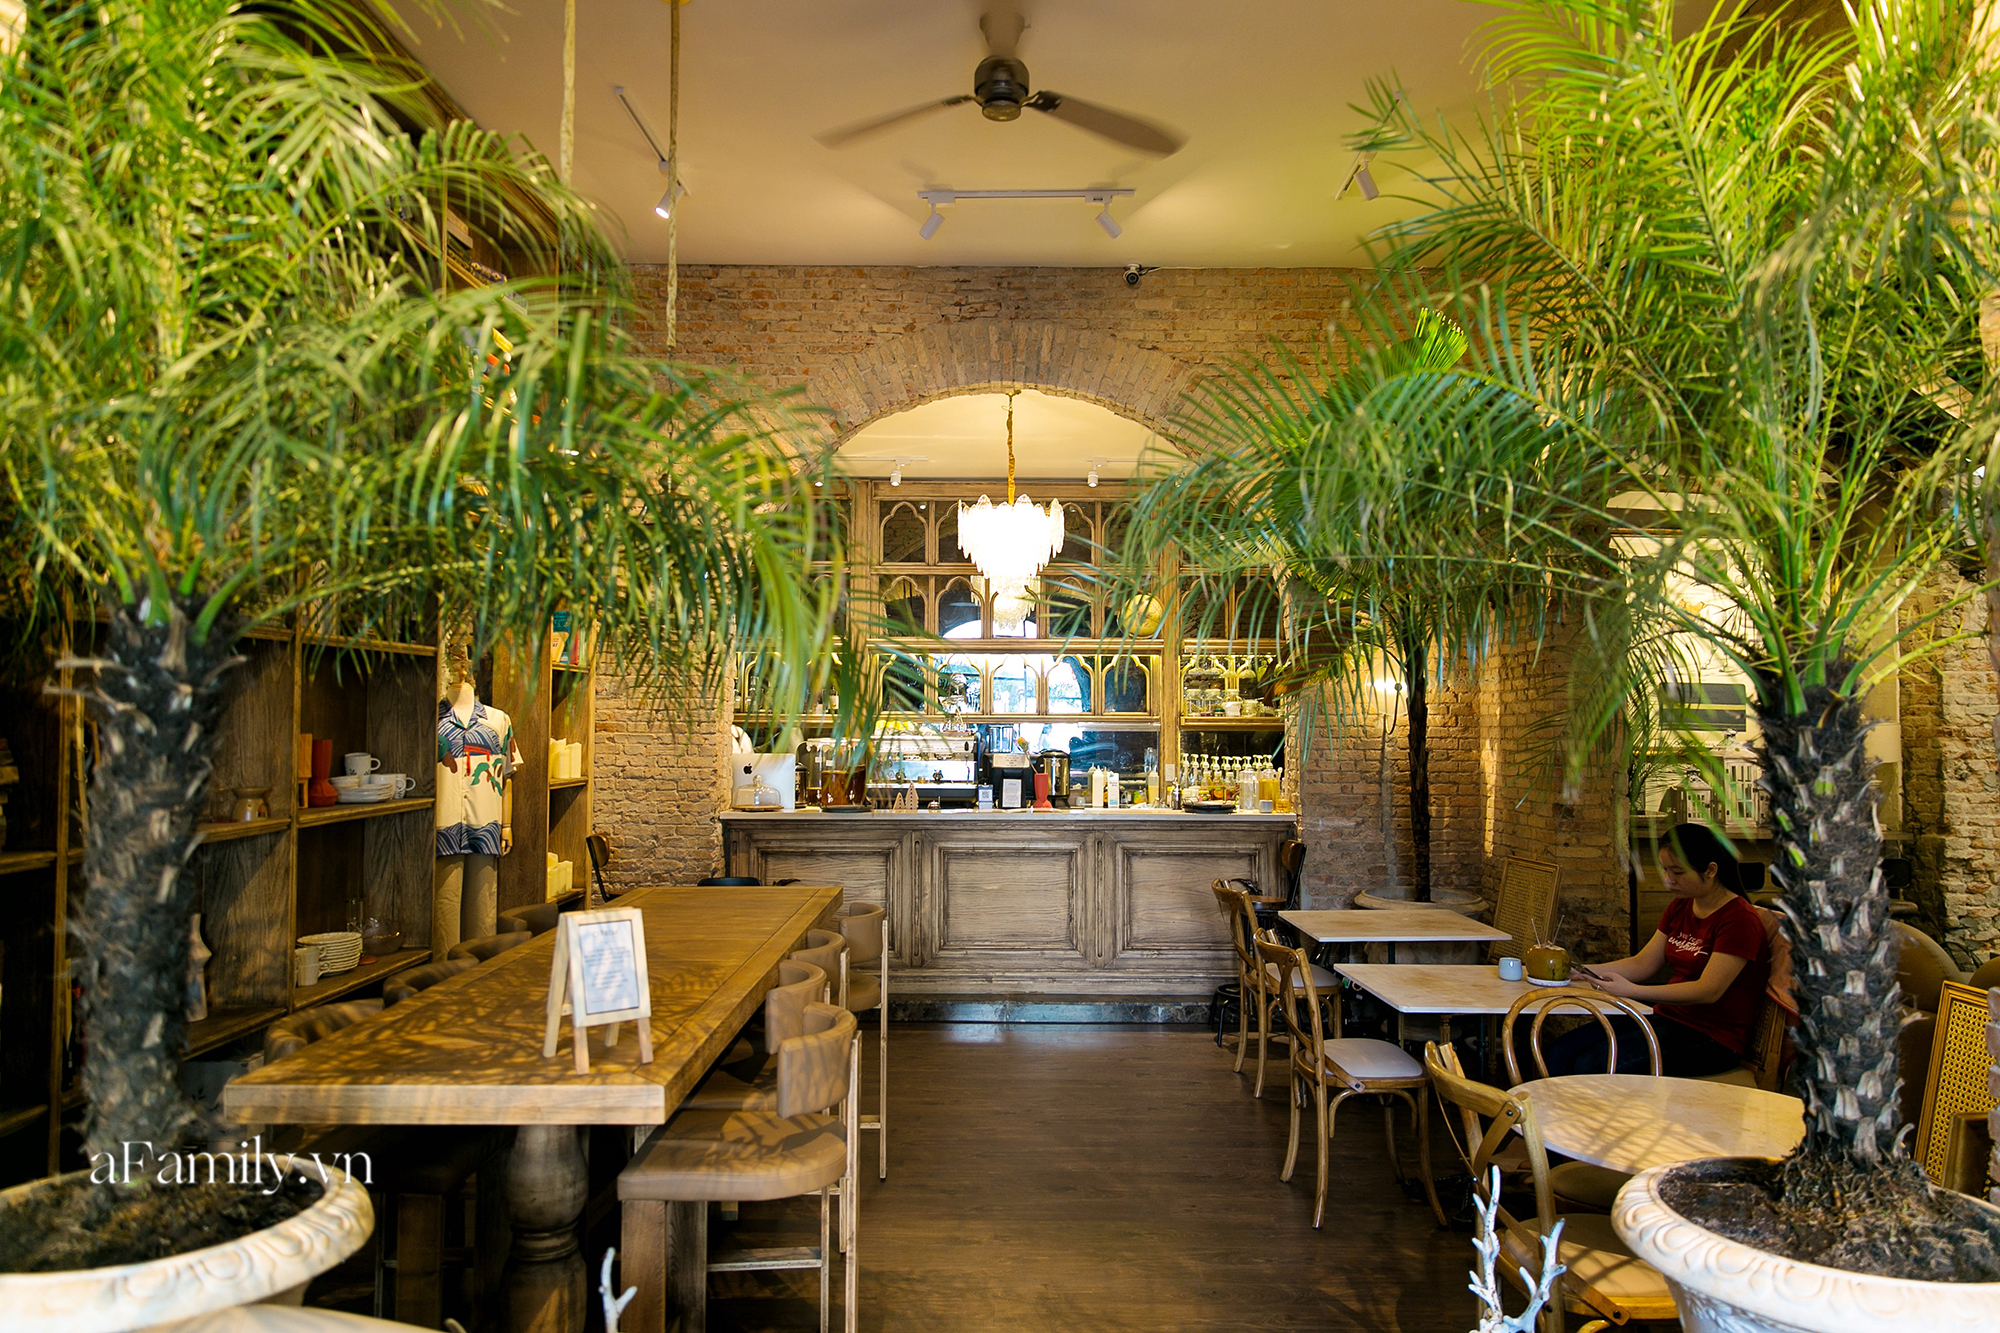 Mới khai trương 1 tuần, quán cà phê đang được cho là đẹp nhất tại Sài Gòn đã bị tố không cho khách chụp ảnh cuối cùng độc - lạ cỡ nào mà hot đến thế? - Ảnh 9.